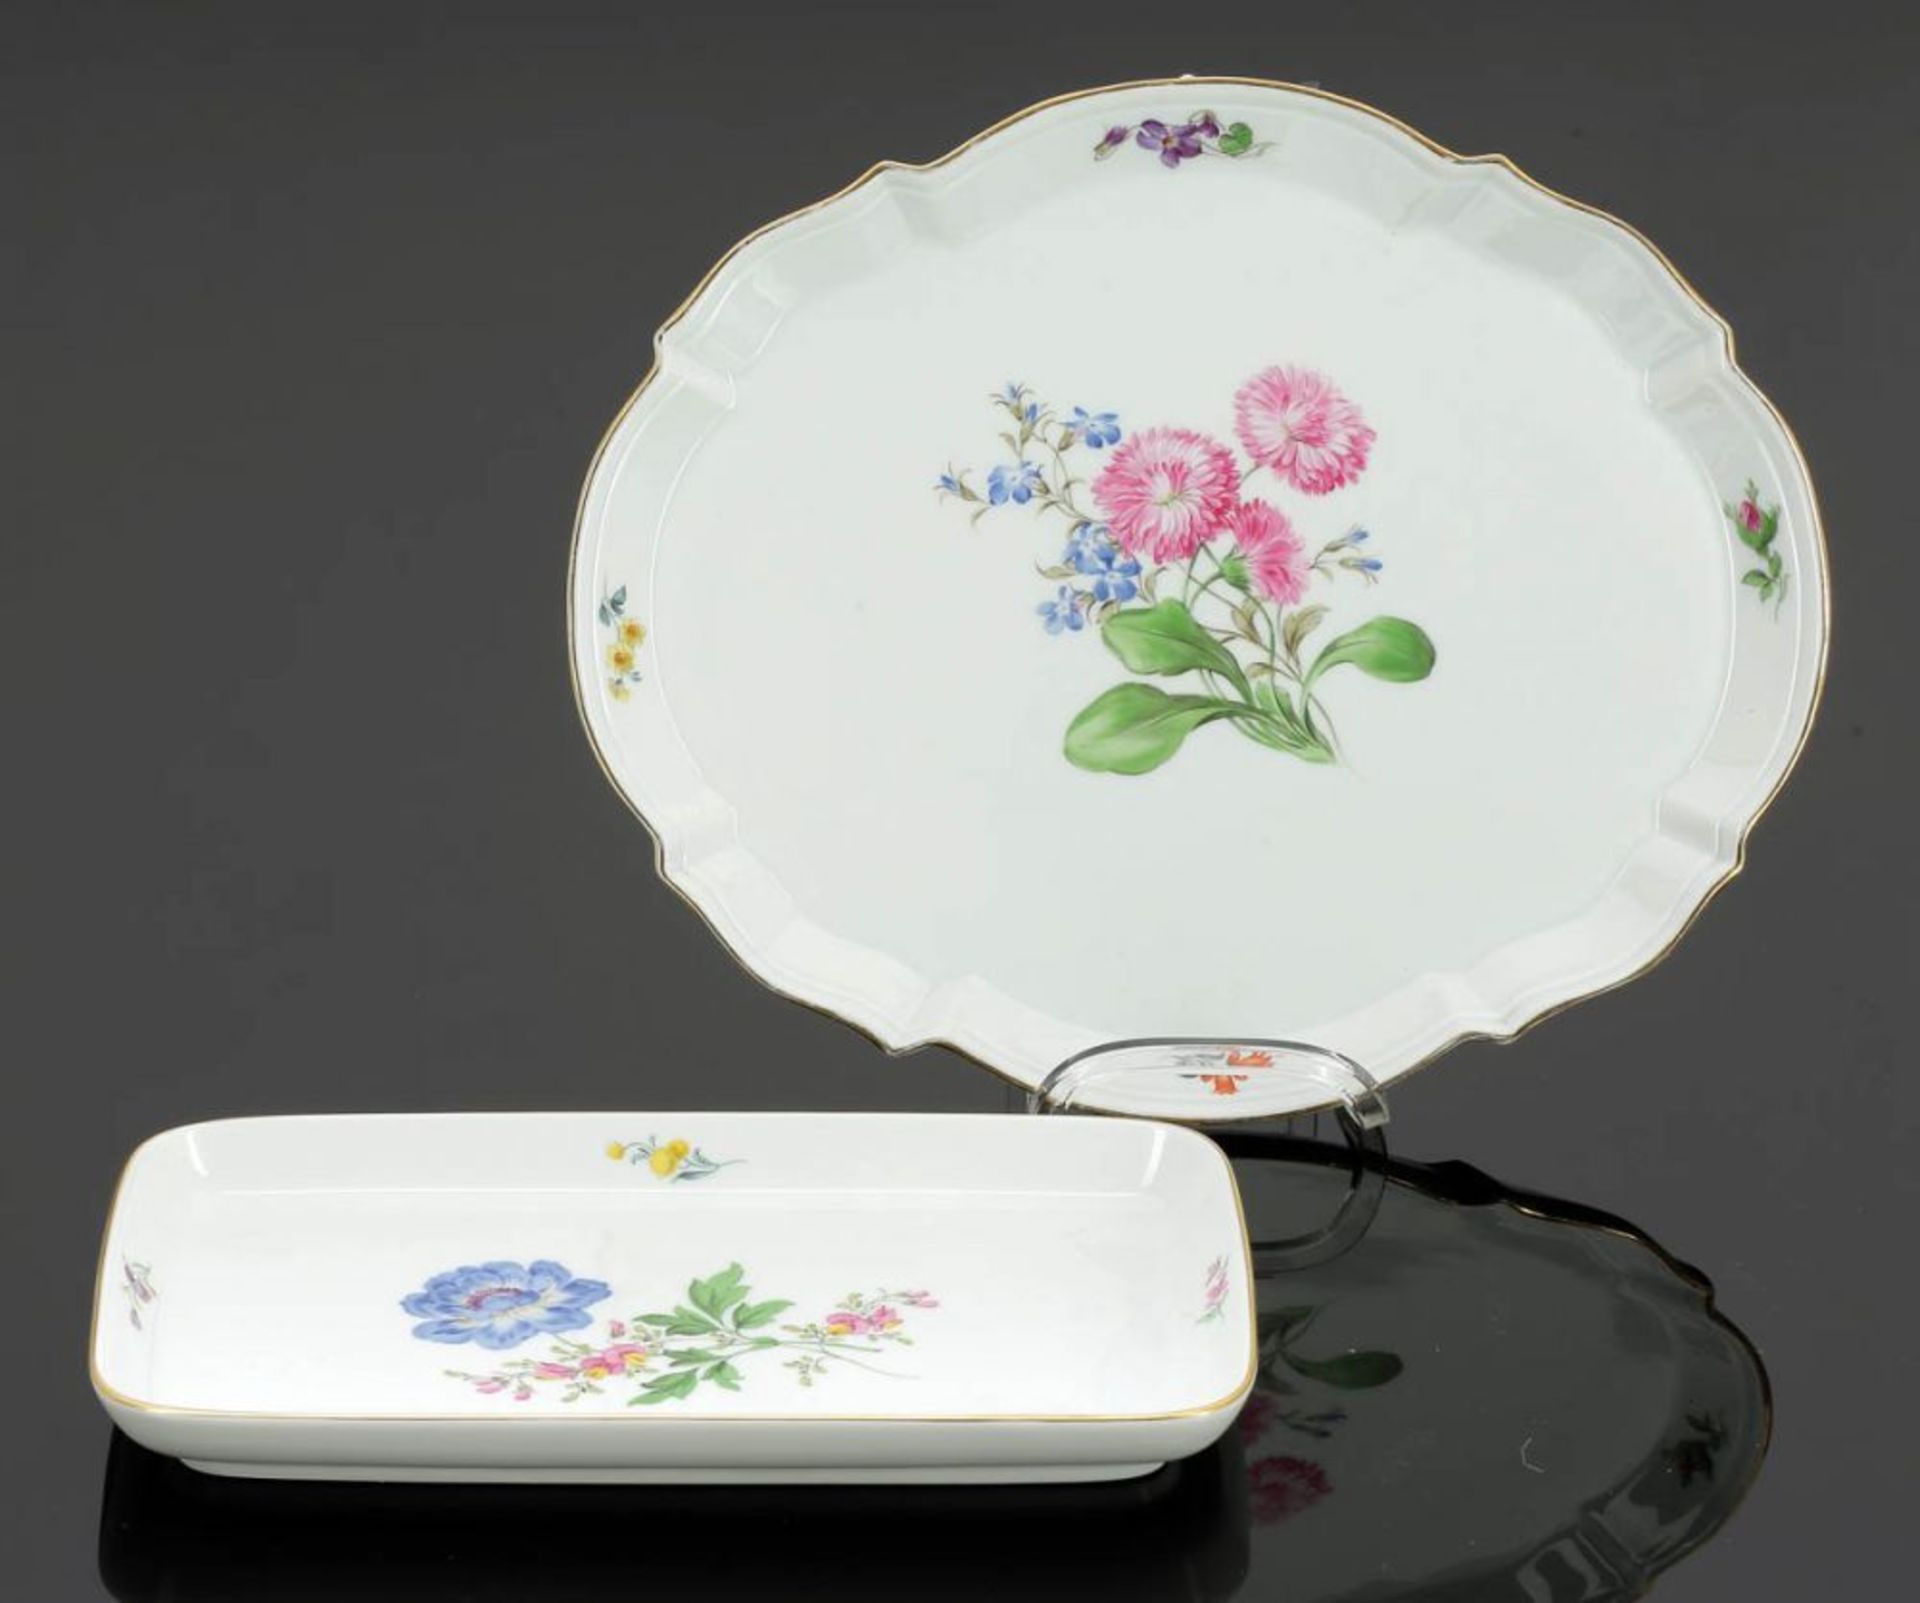 rechteckige Platte und passige Platte Staatliche Porzellan Manufaktur, Meissen um 1980 und 1924-